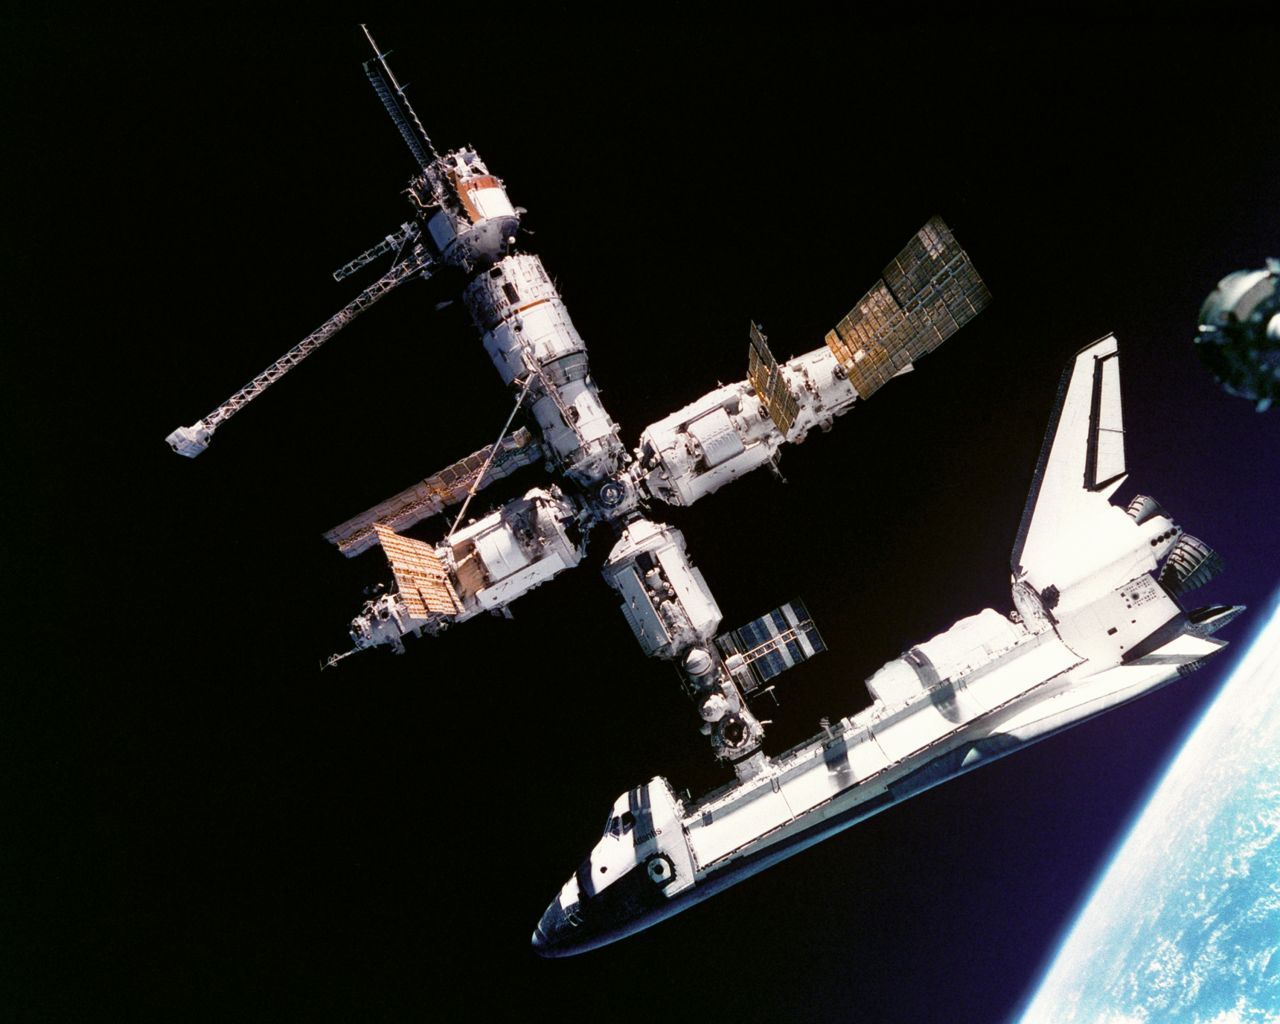 "Houston, Atlantis, we have capture!" 20 Jahre später und nach dem Untergang der Sowjetunion dockte am 27. Juni 1995 das US-Spaceshuttle Atlantis an die russische Raumstation MIR an - das Vorspiel für die ISS-Zusammenarbeit. 